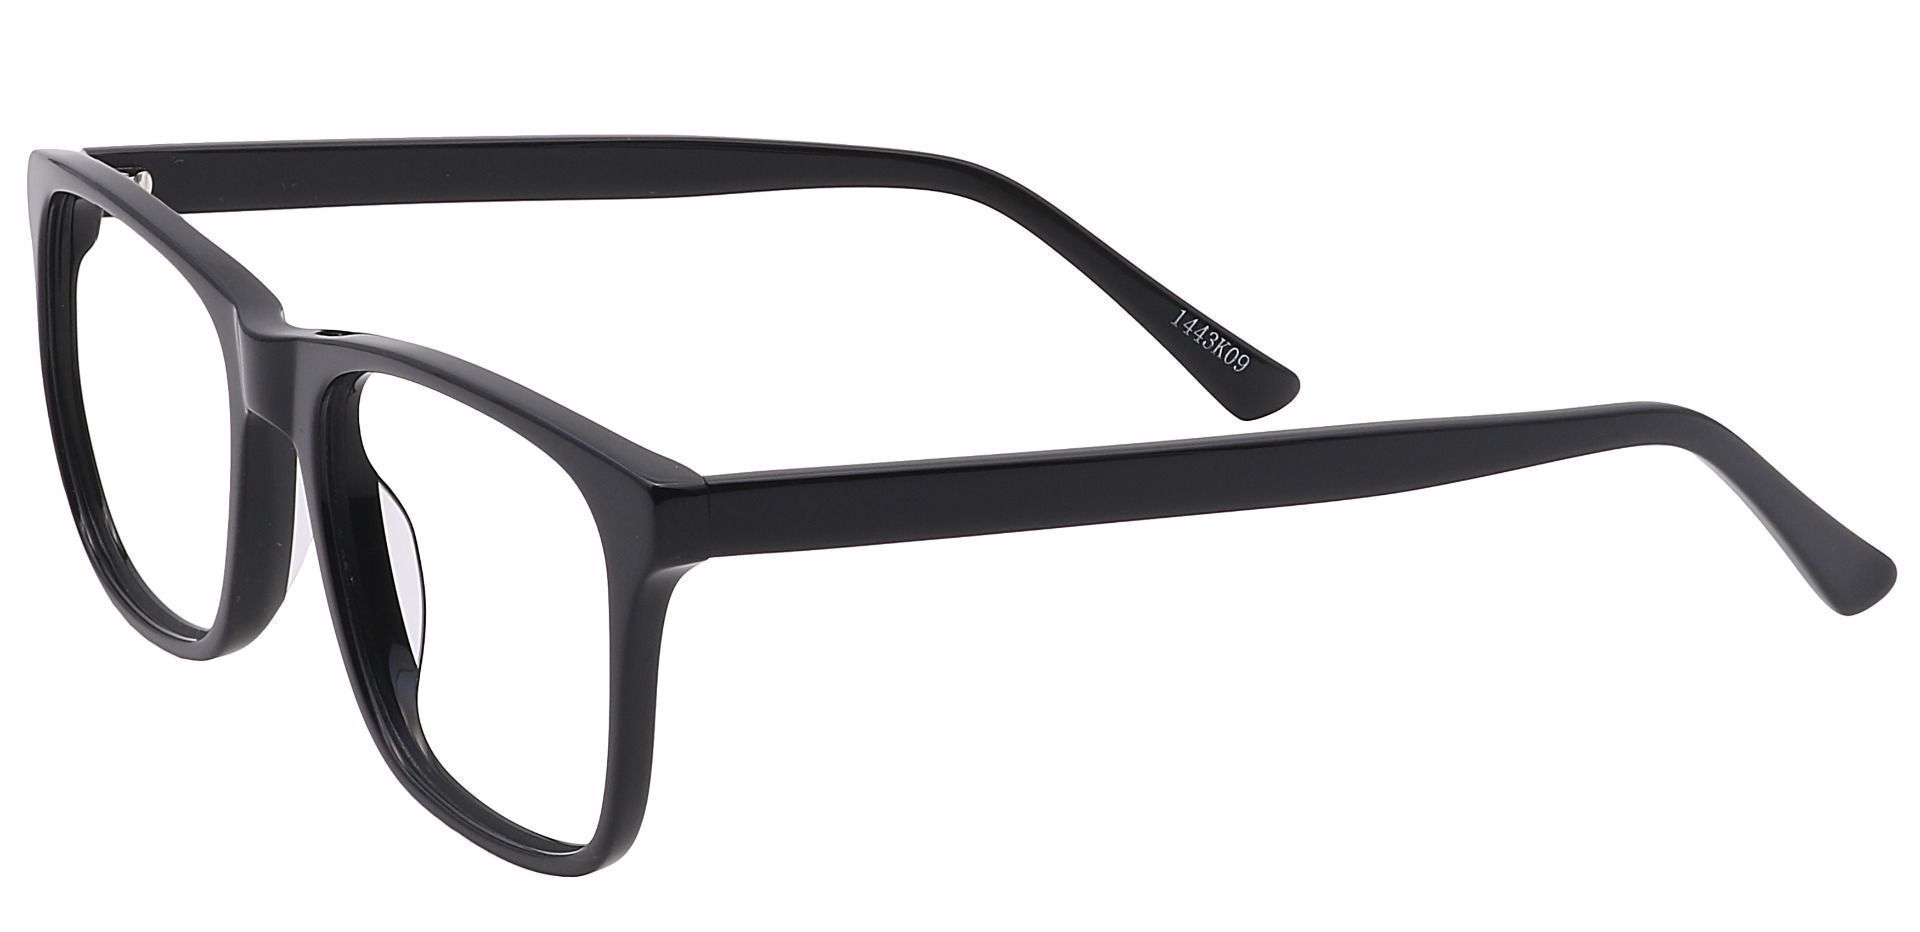 Cantina Square Non-Rx Glasses - Black